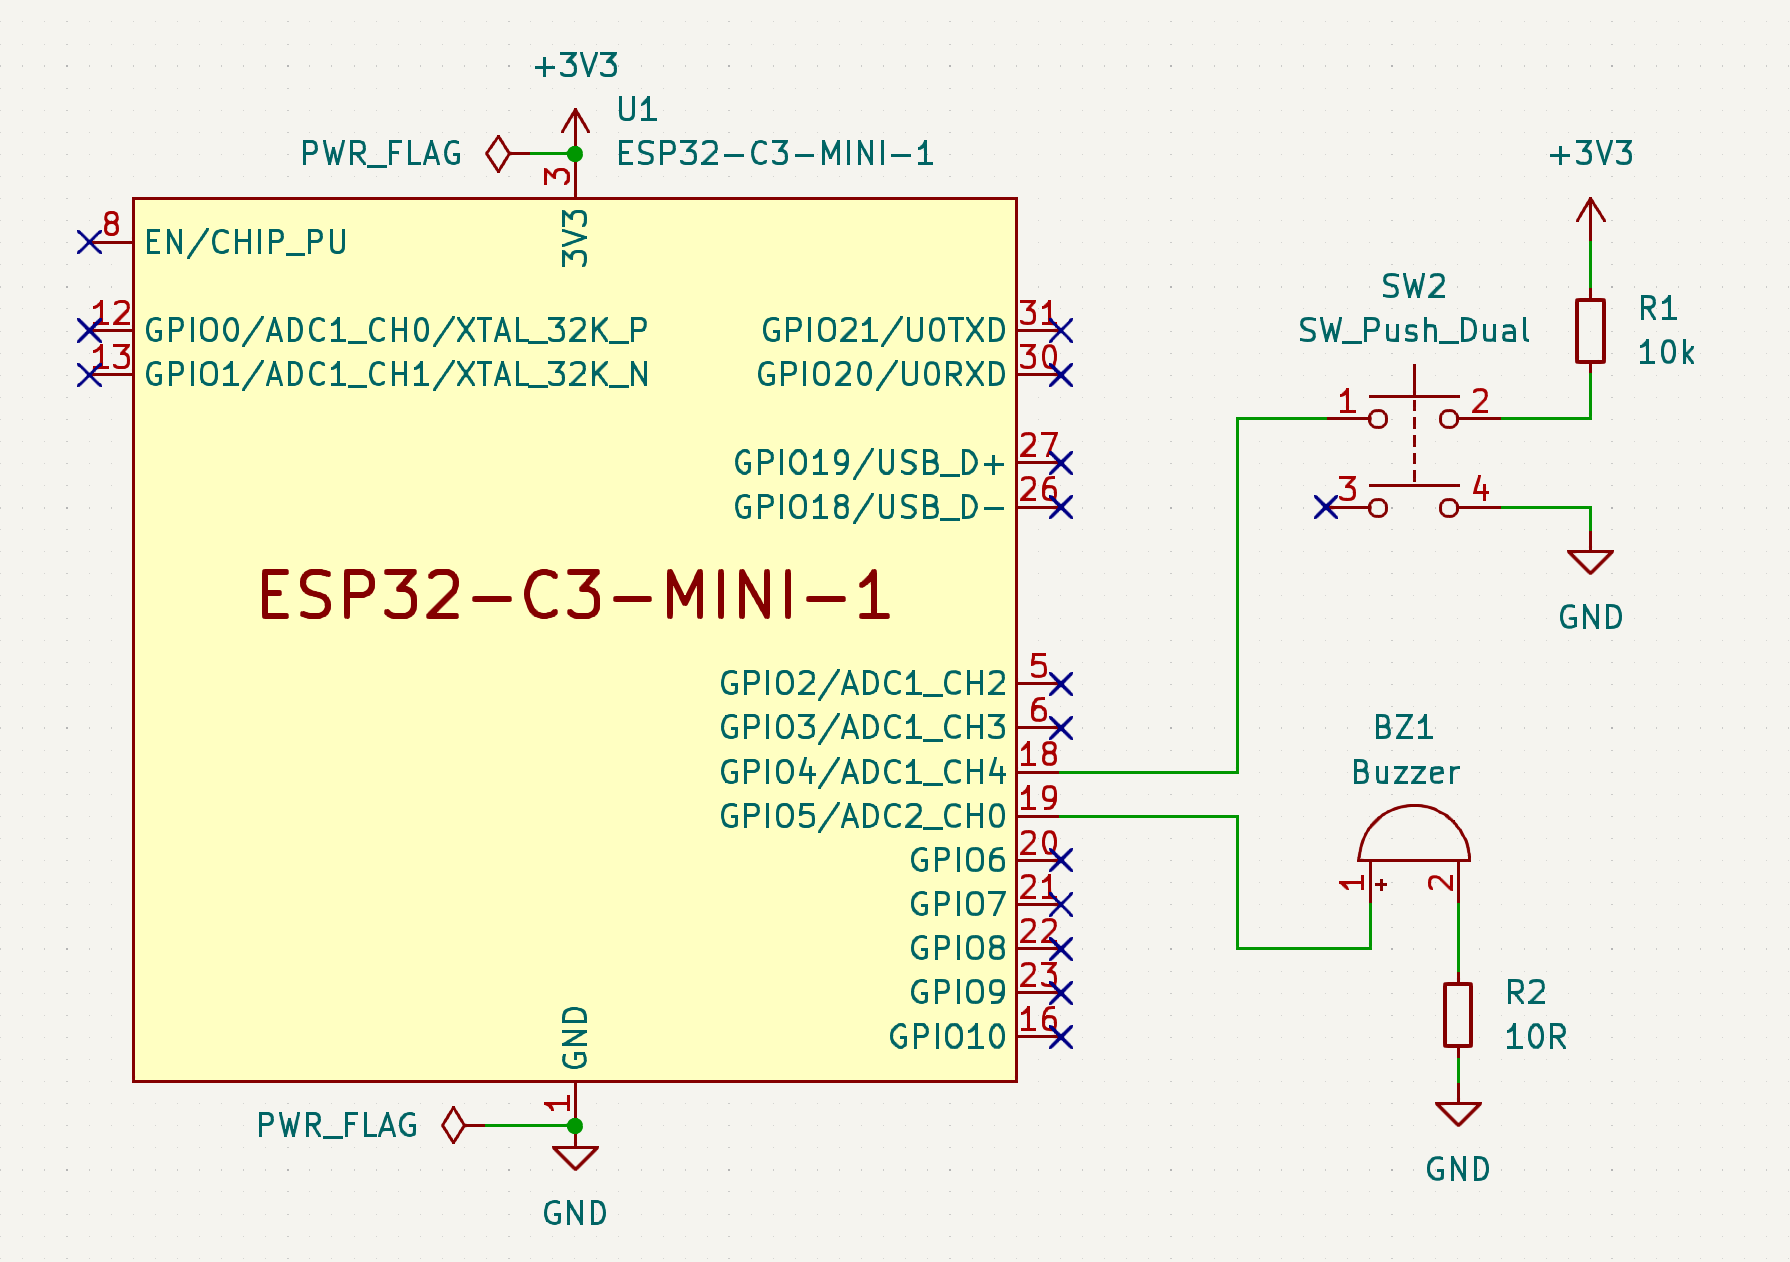 Press the buzzer with Arduino on ESP32-C3 schematic